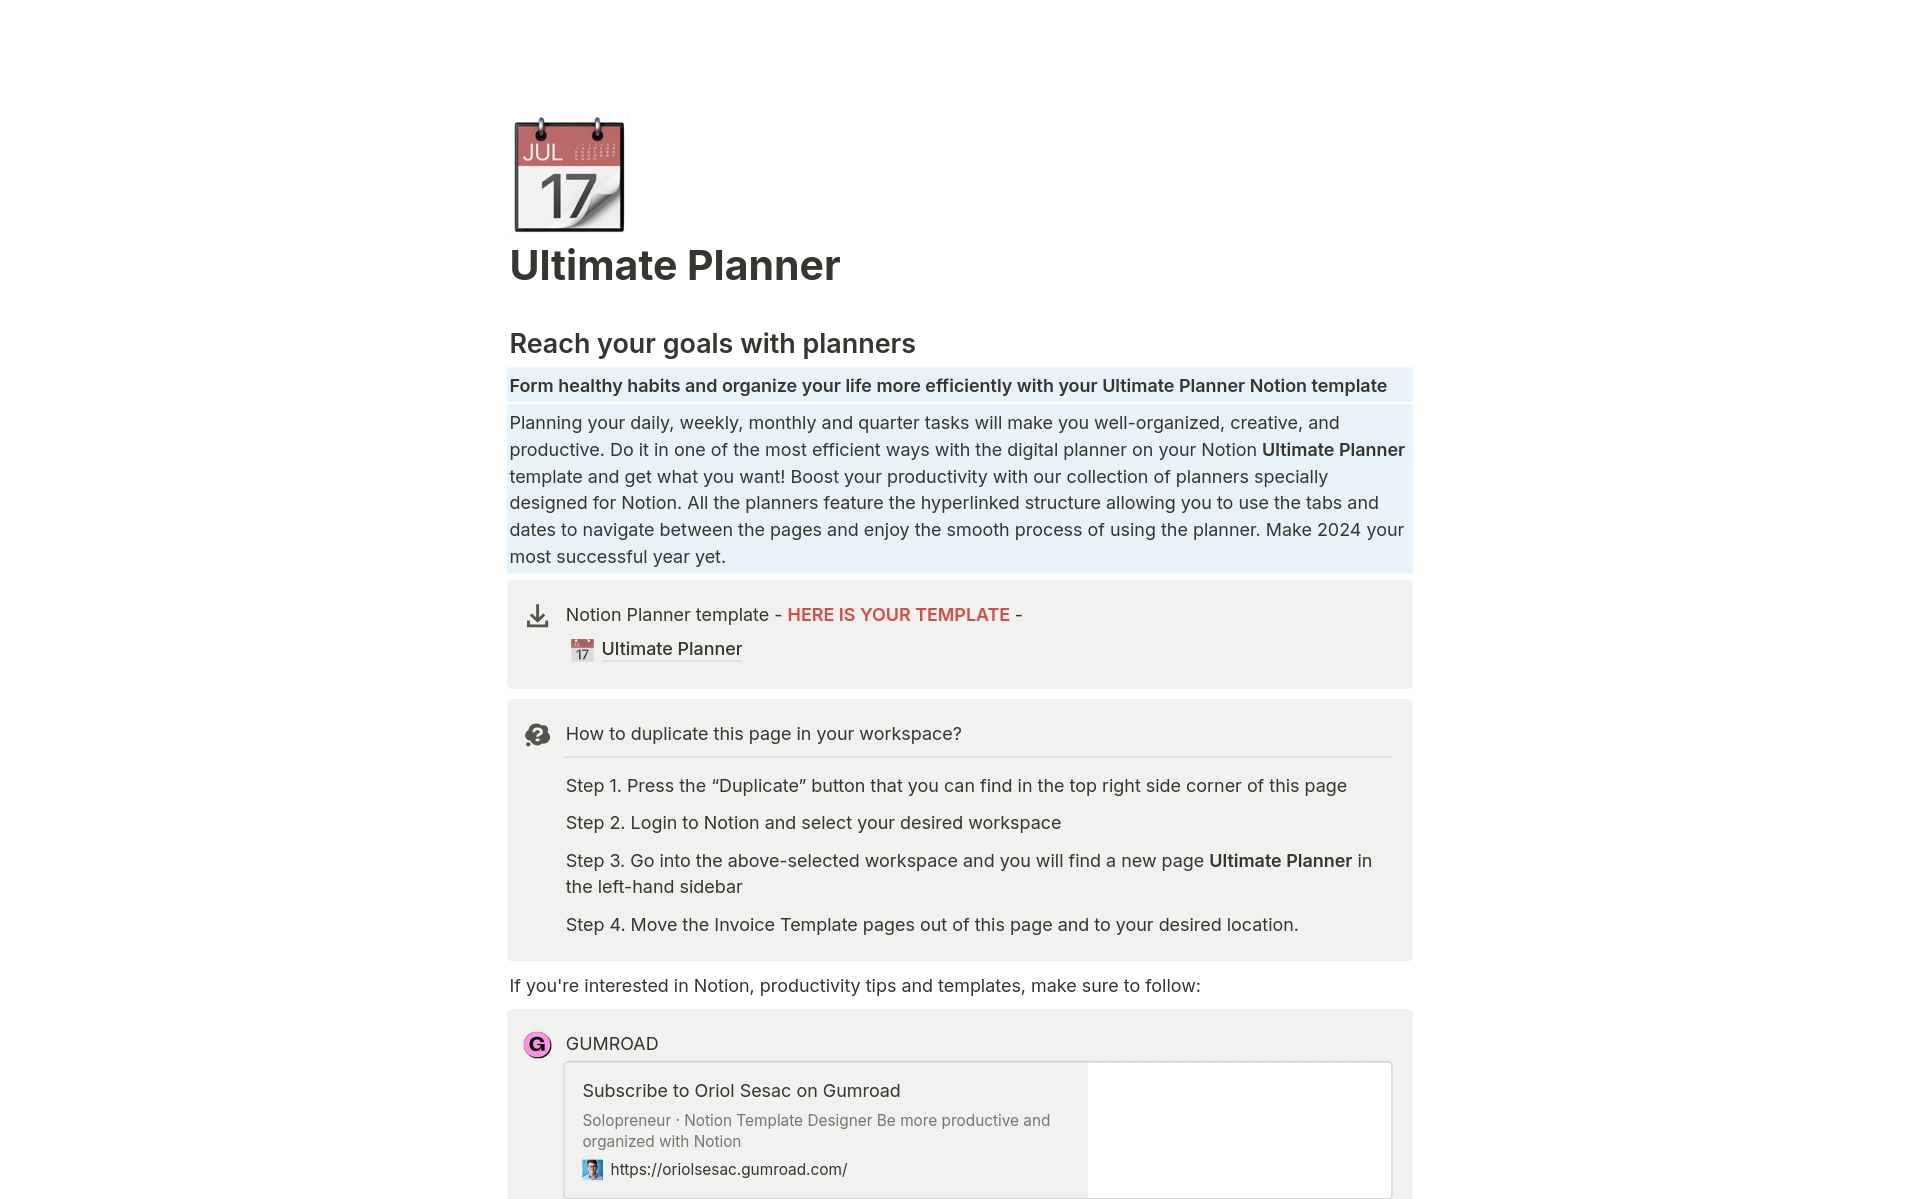 Vista previa de una plantilla para Ultimate Planner